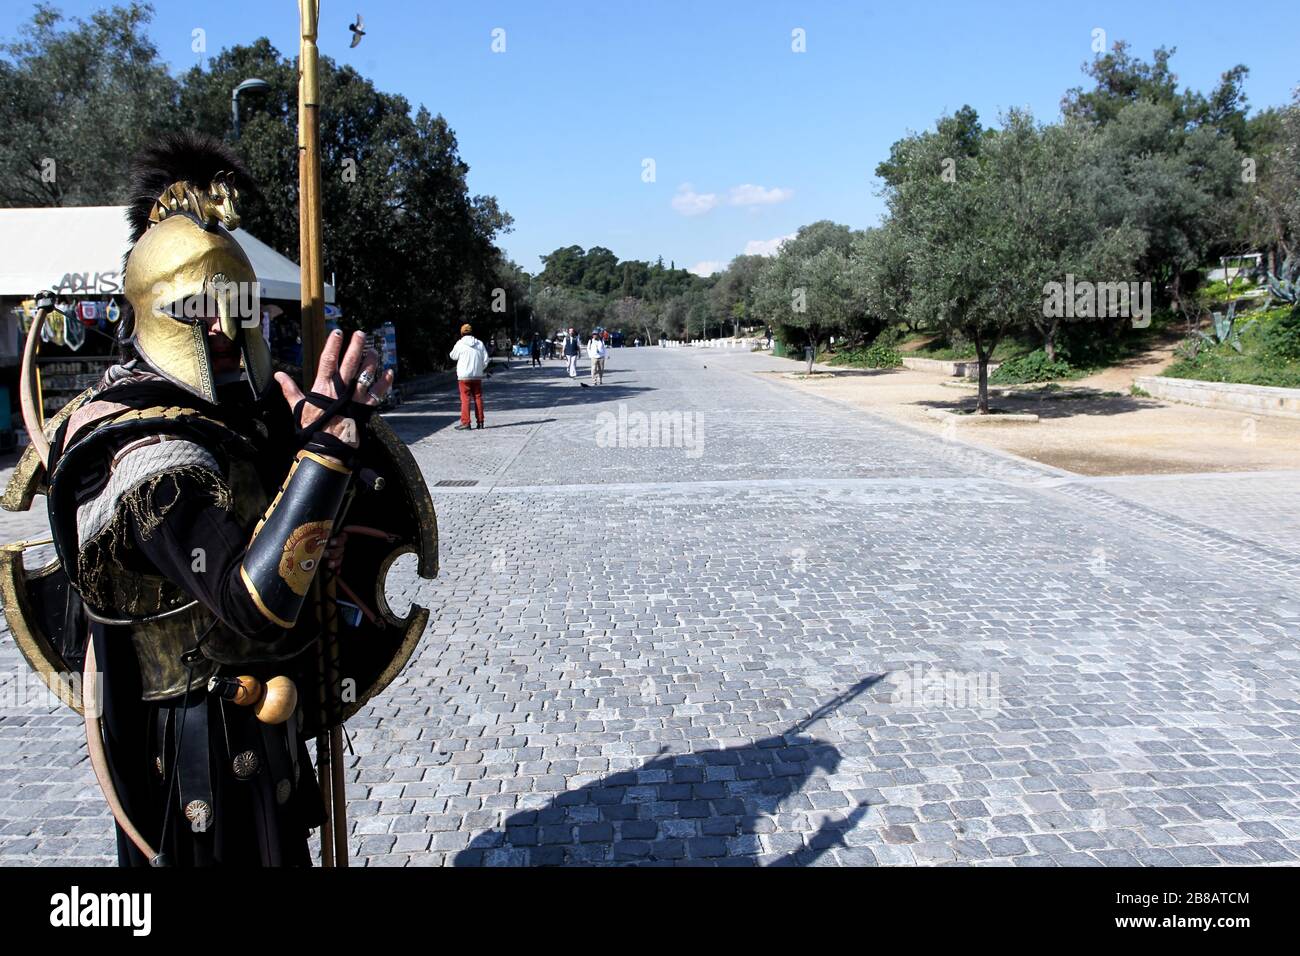 Die Fußgängerzone Dionyssiou Areopagitou unter der Akropolis, leer vor Touristen. Der griechische Tourismus wurde von Annullierungen inmitten eines Coronavirus-Ausbruchs hart getroffen. Stockfoto